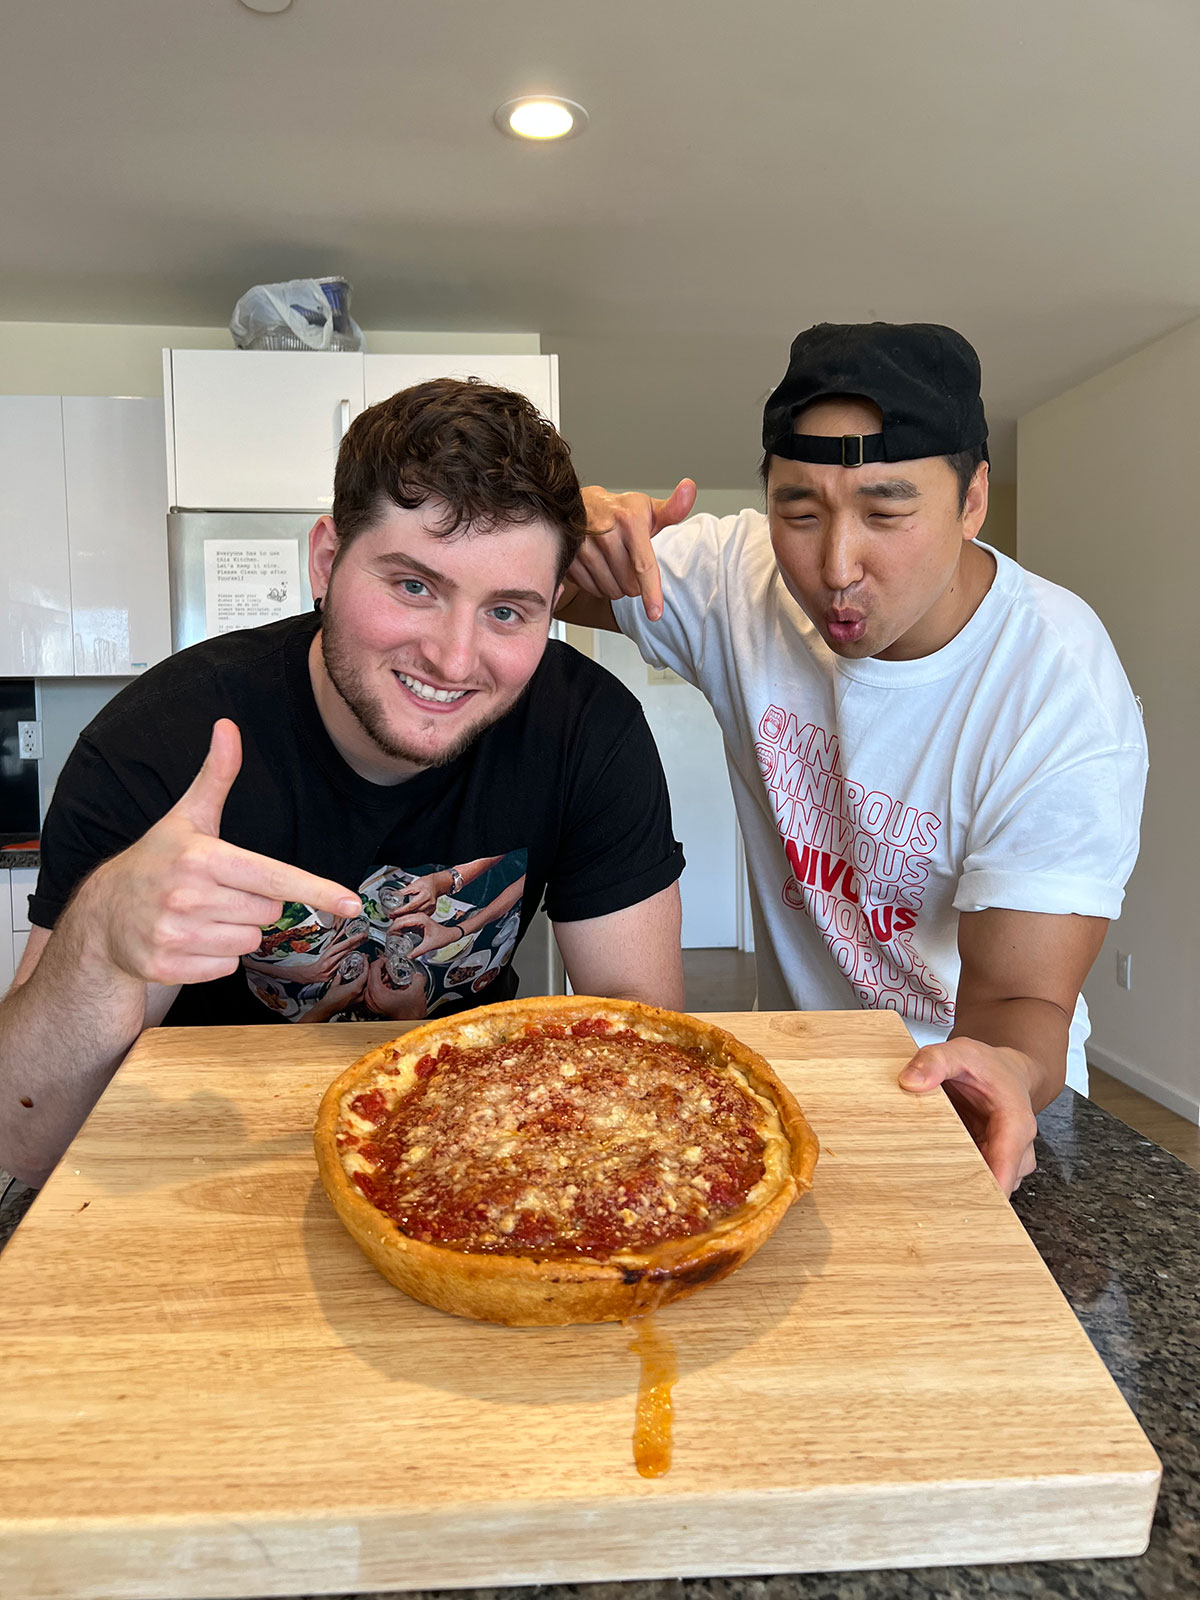 Chicago Style Pizza Recipe